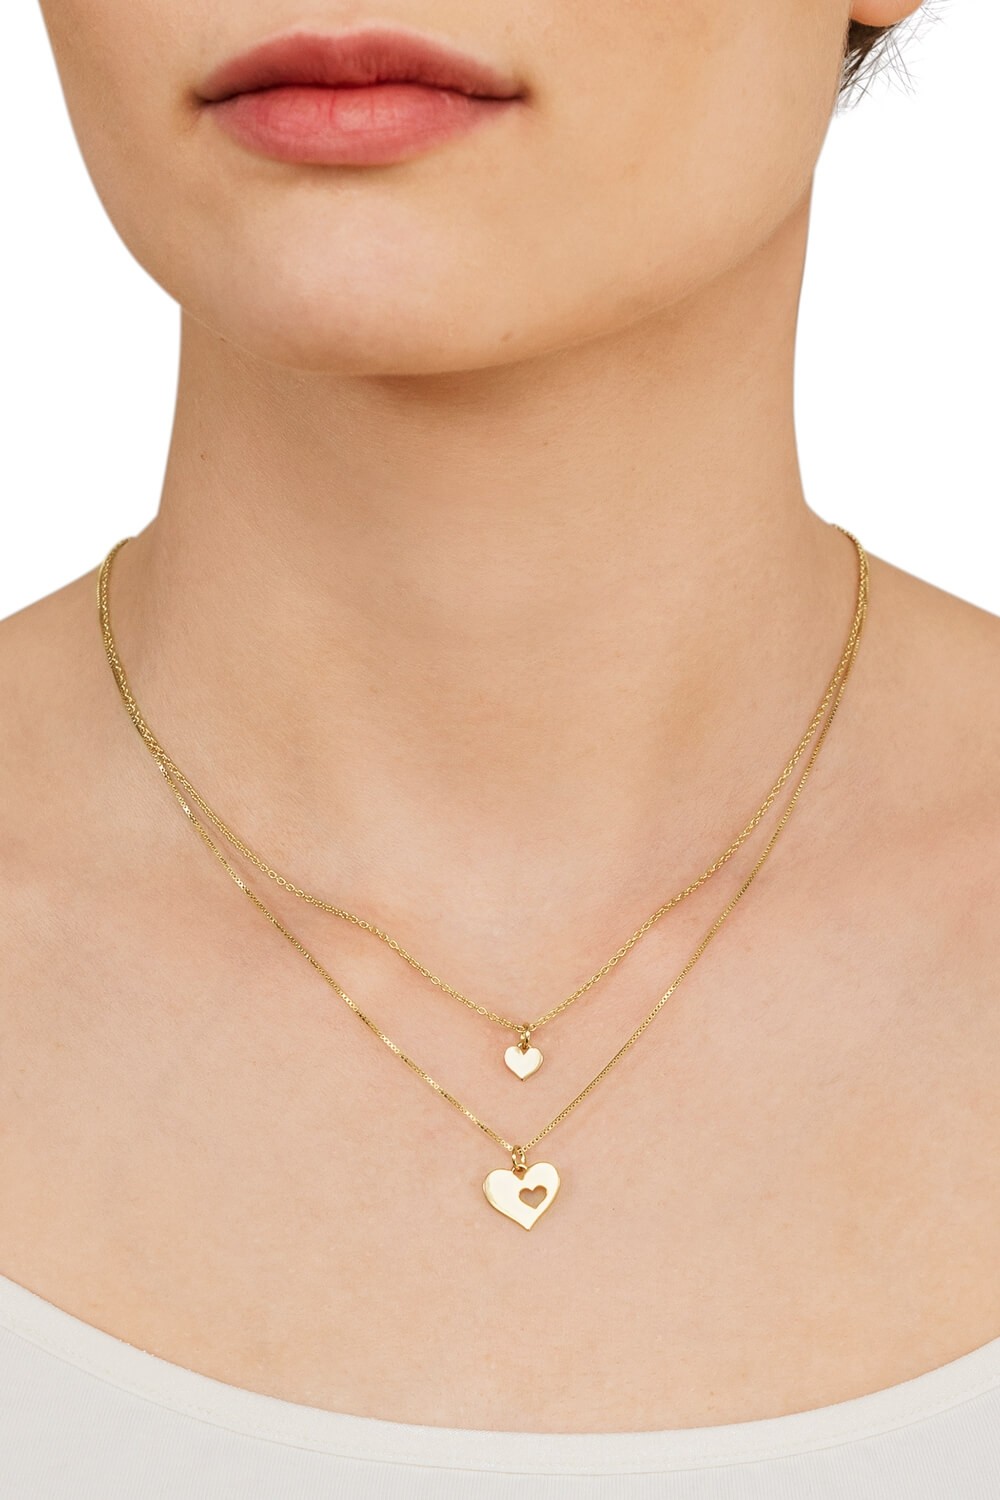 Damen Halskette Valentinstag Gold Statement Kette Kettenglieder Geschenk 